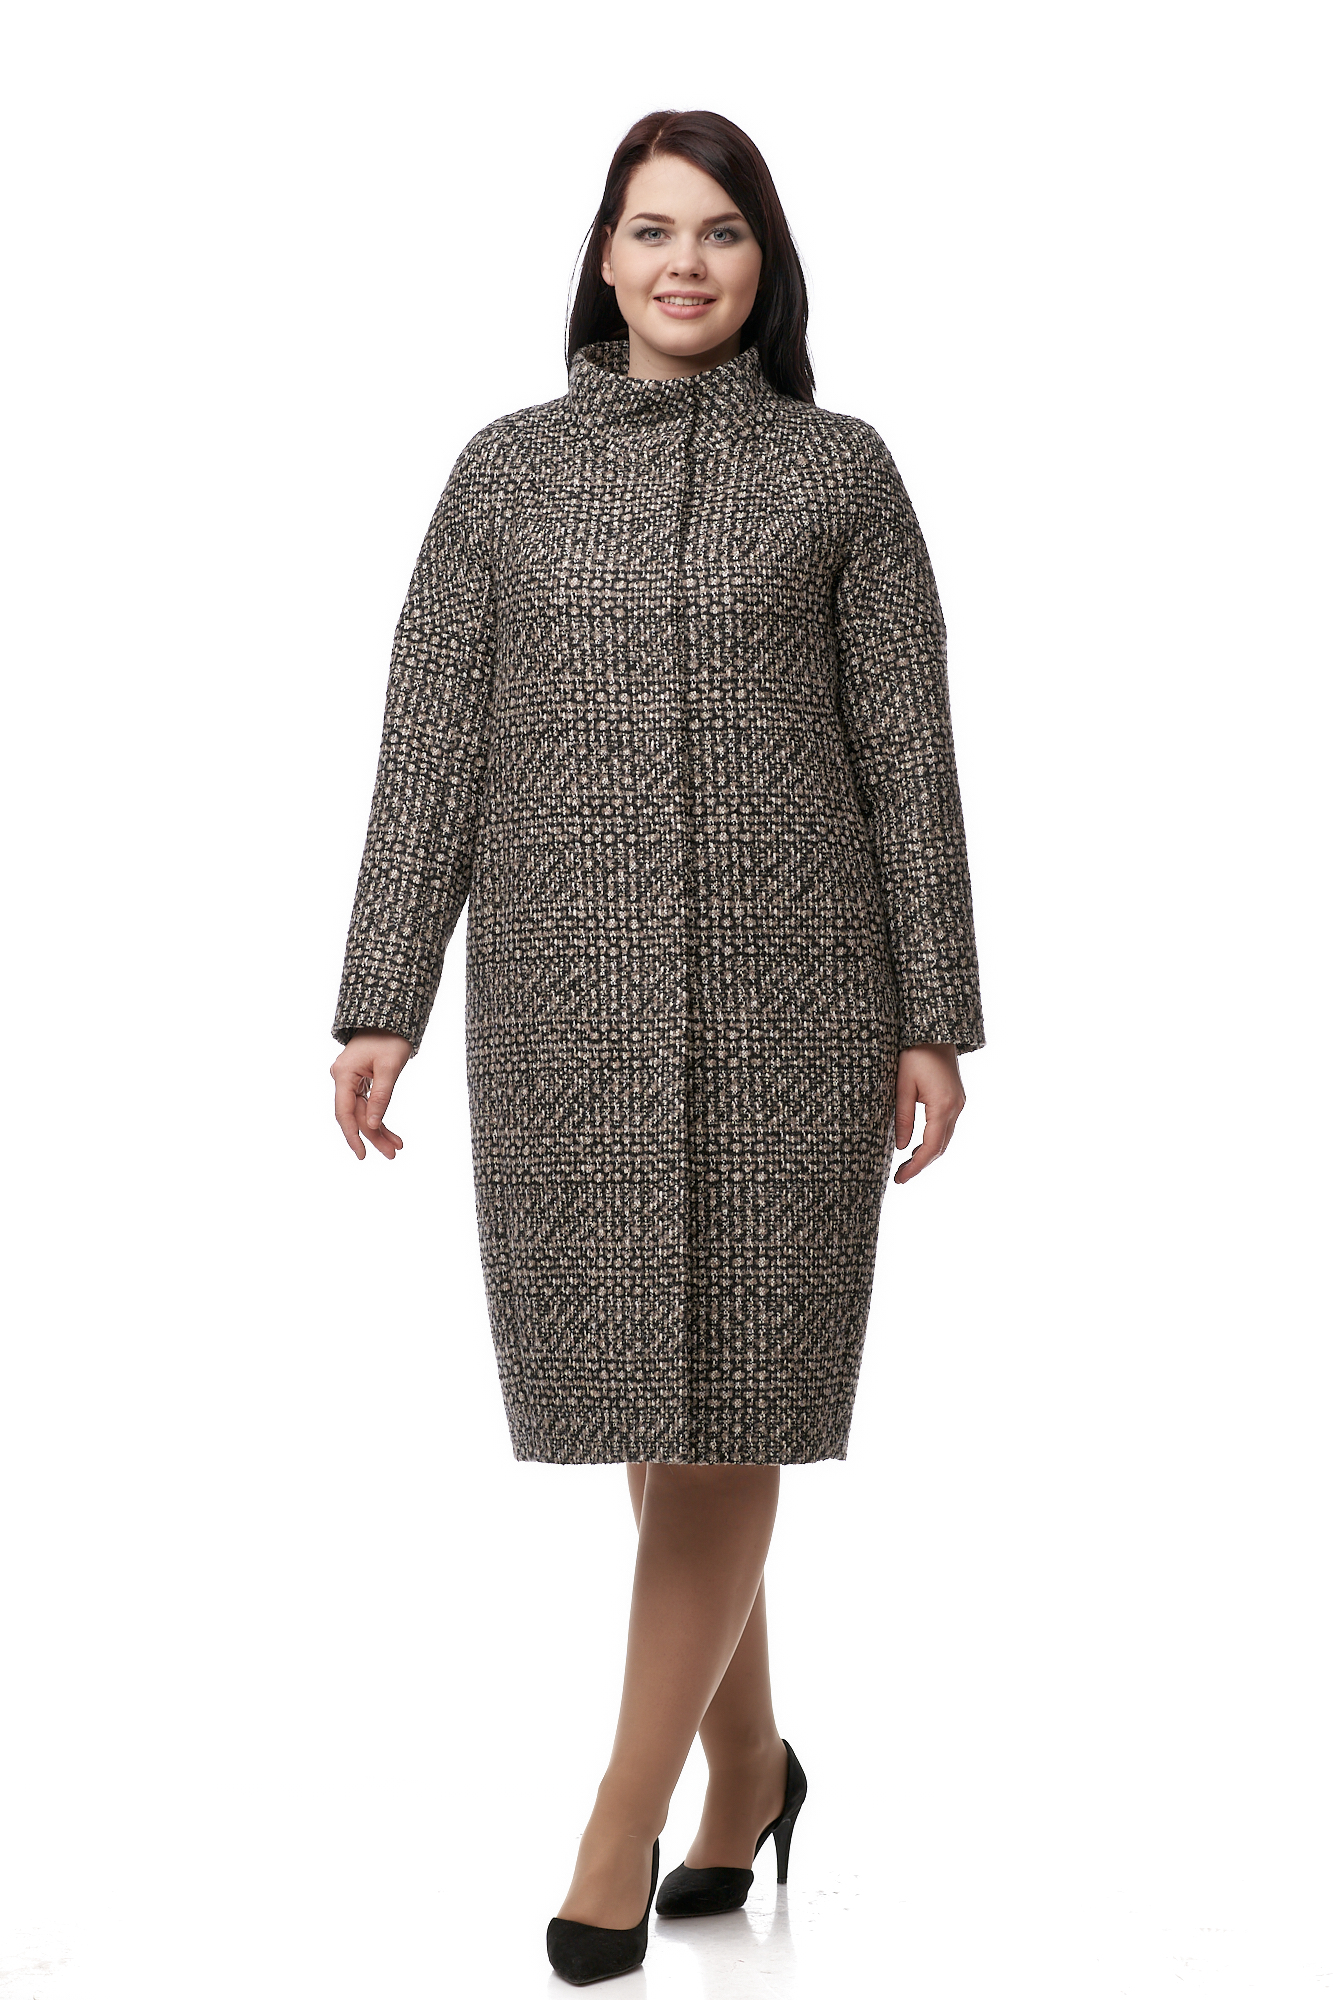 Женское пальто из текстиля с воротником 8009609-3